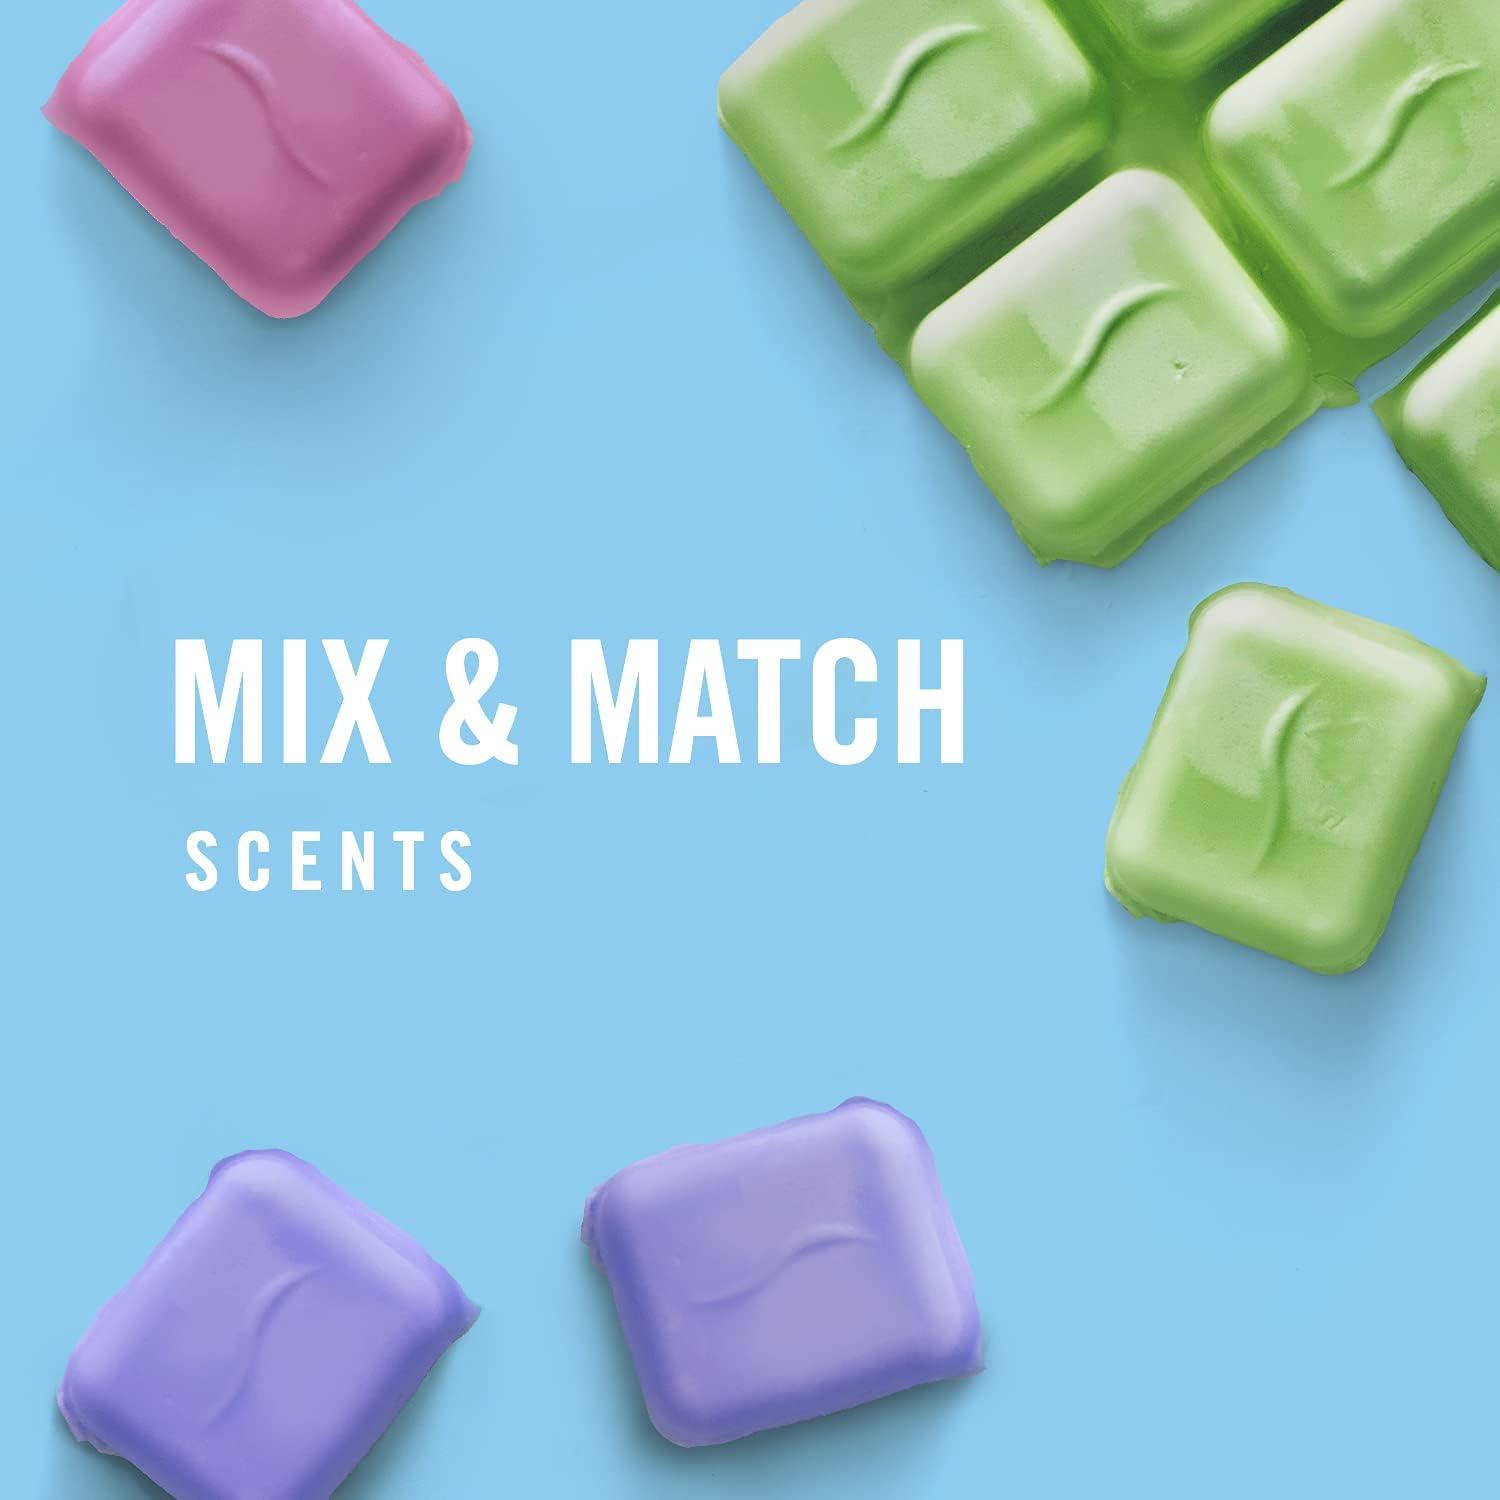 Febreze Wax Melts, Wax Melt Warmer Cubes, Wax Warmer Cubes, Gain Original  Scent, 6 packs, 6 cubes each, Air Freshener